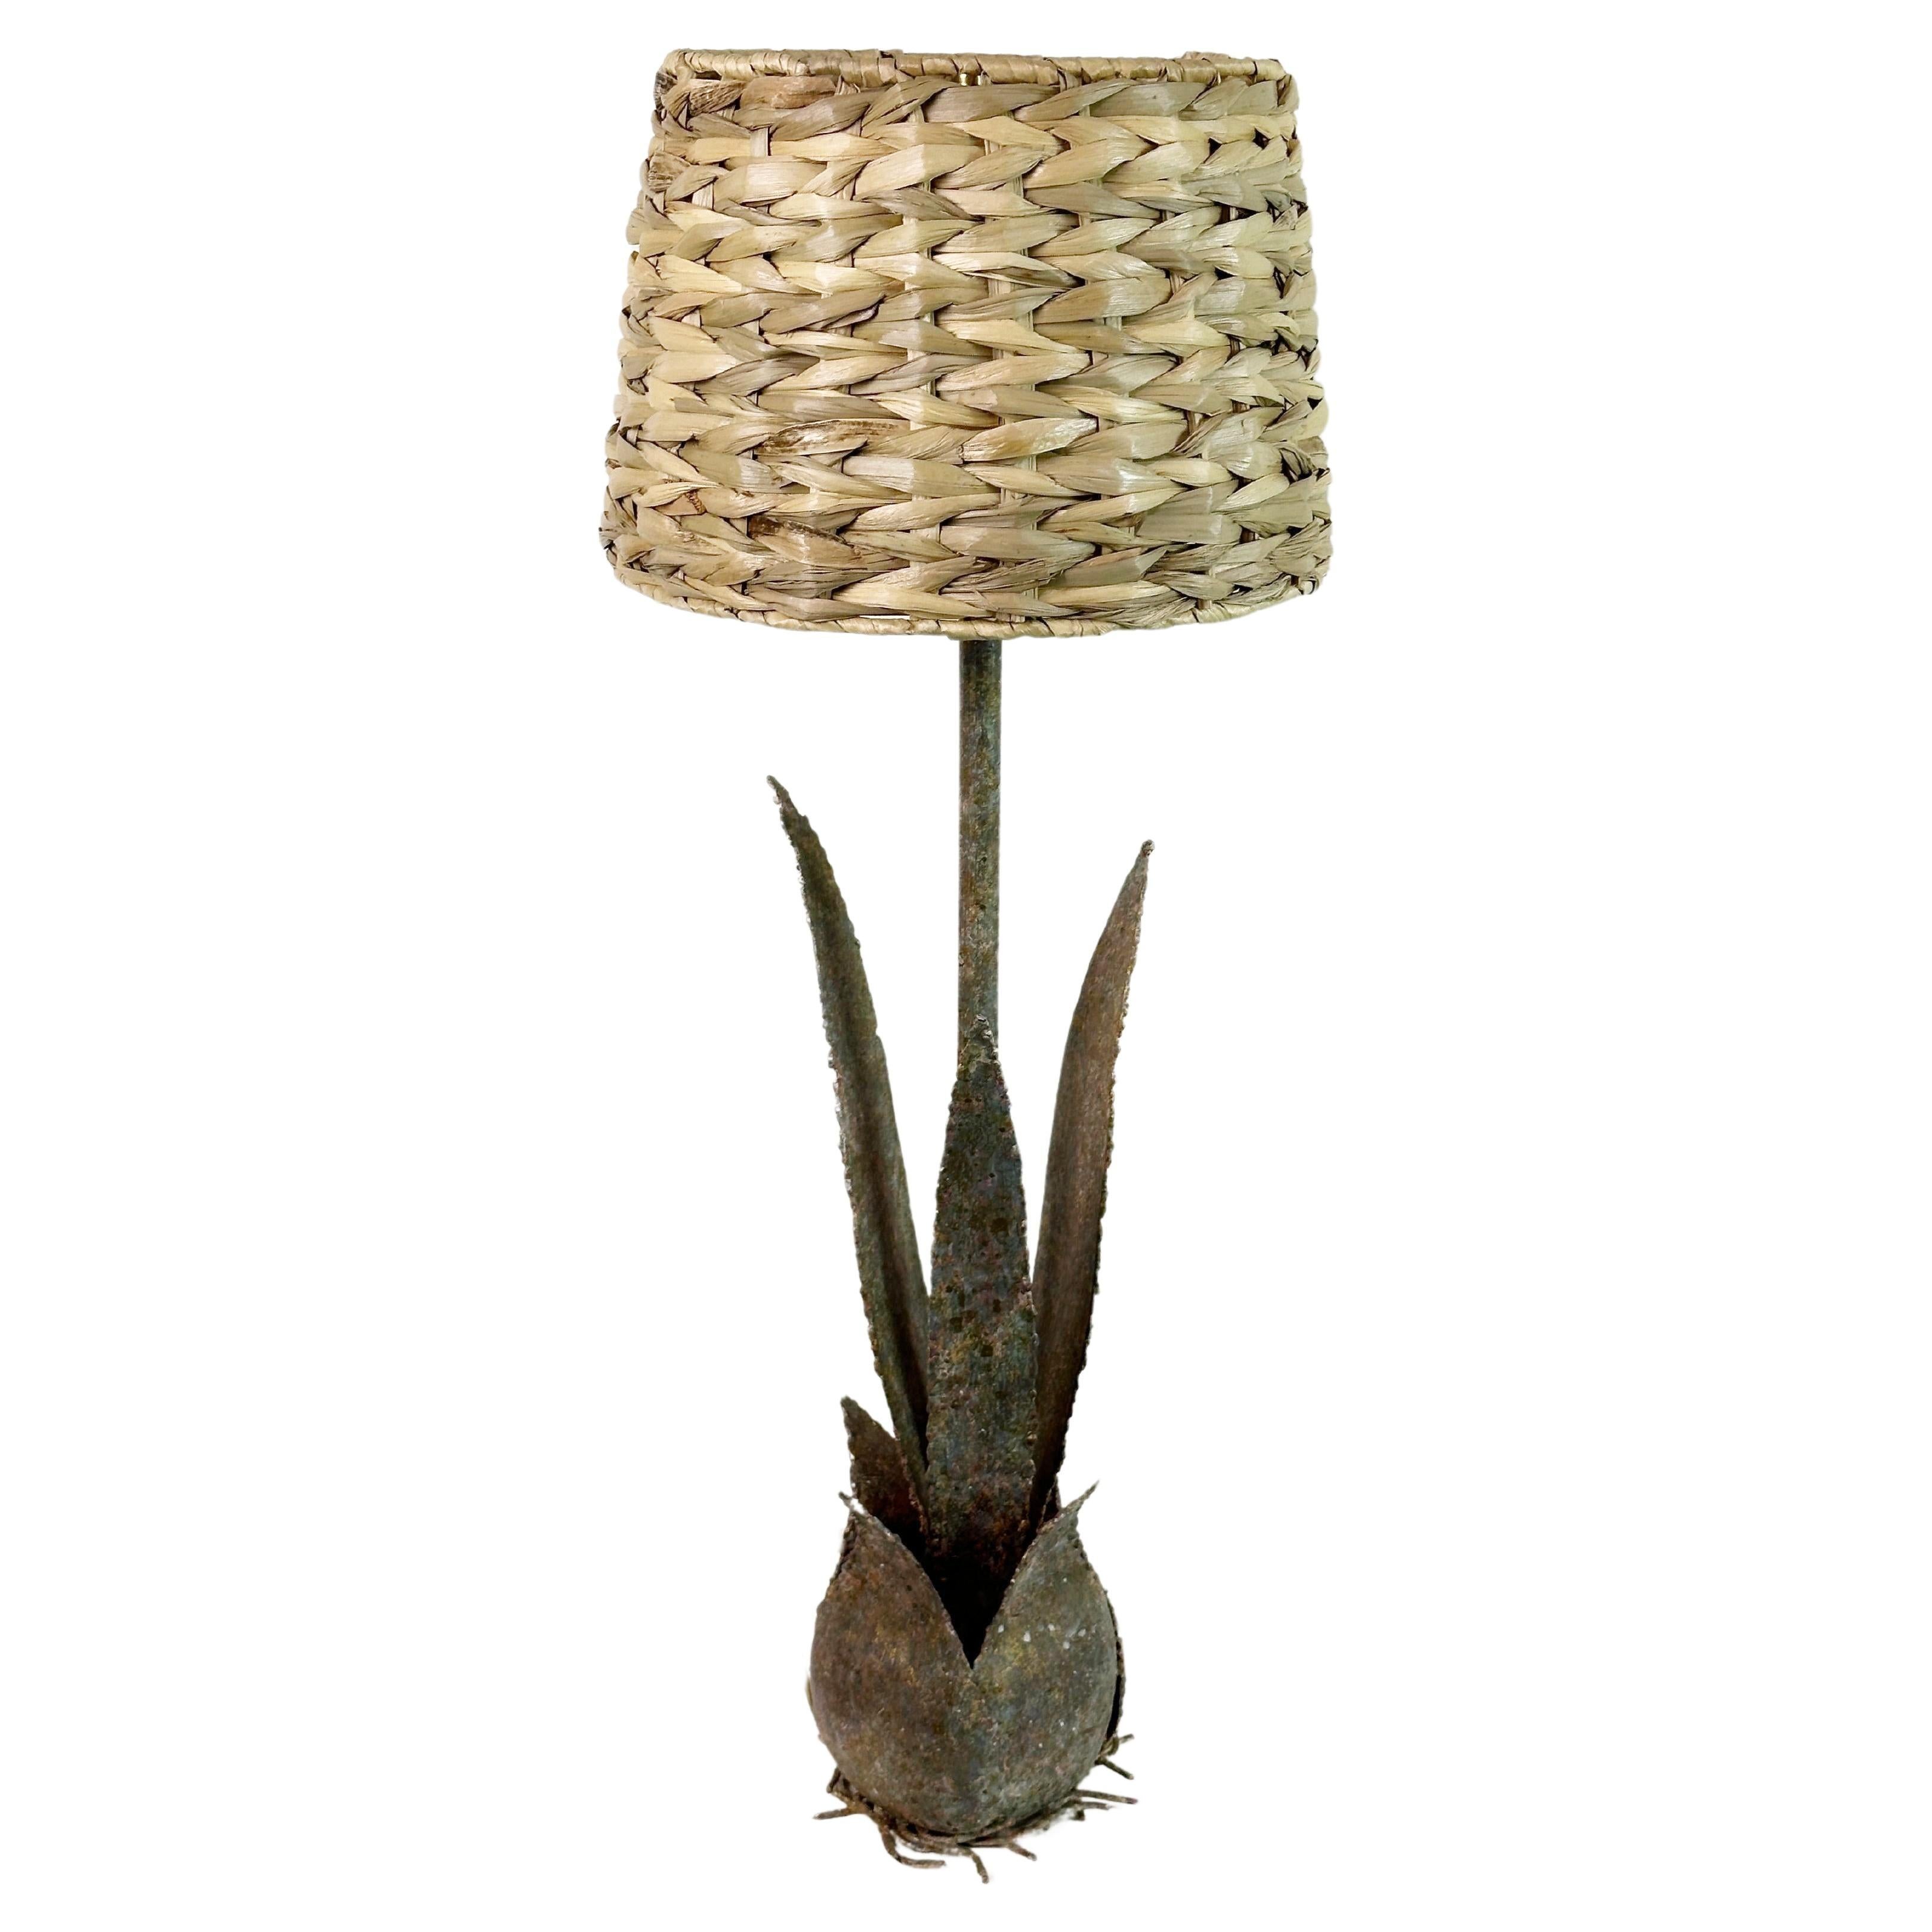 Dieses Paar Kaktus-Tischlampen aus Metall versprüht den Charme des Hollywood-Regency-Stils mit einer modernen Note.

Jede Leuchte ist aus patiniertem Metall gefertigt, was eine lange Lebensdauer garantiert. Die drei skurrilen Kaktusblätter mit ihren